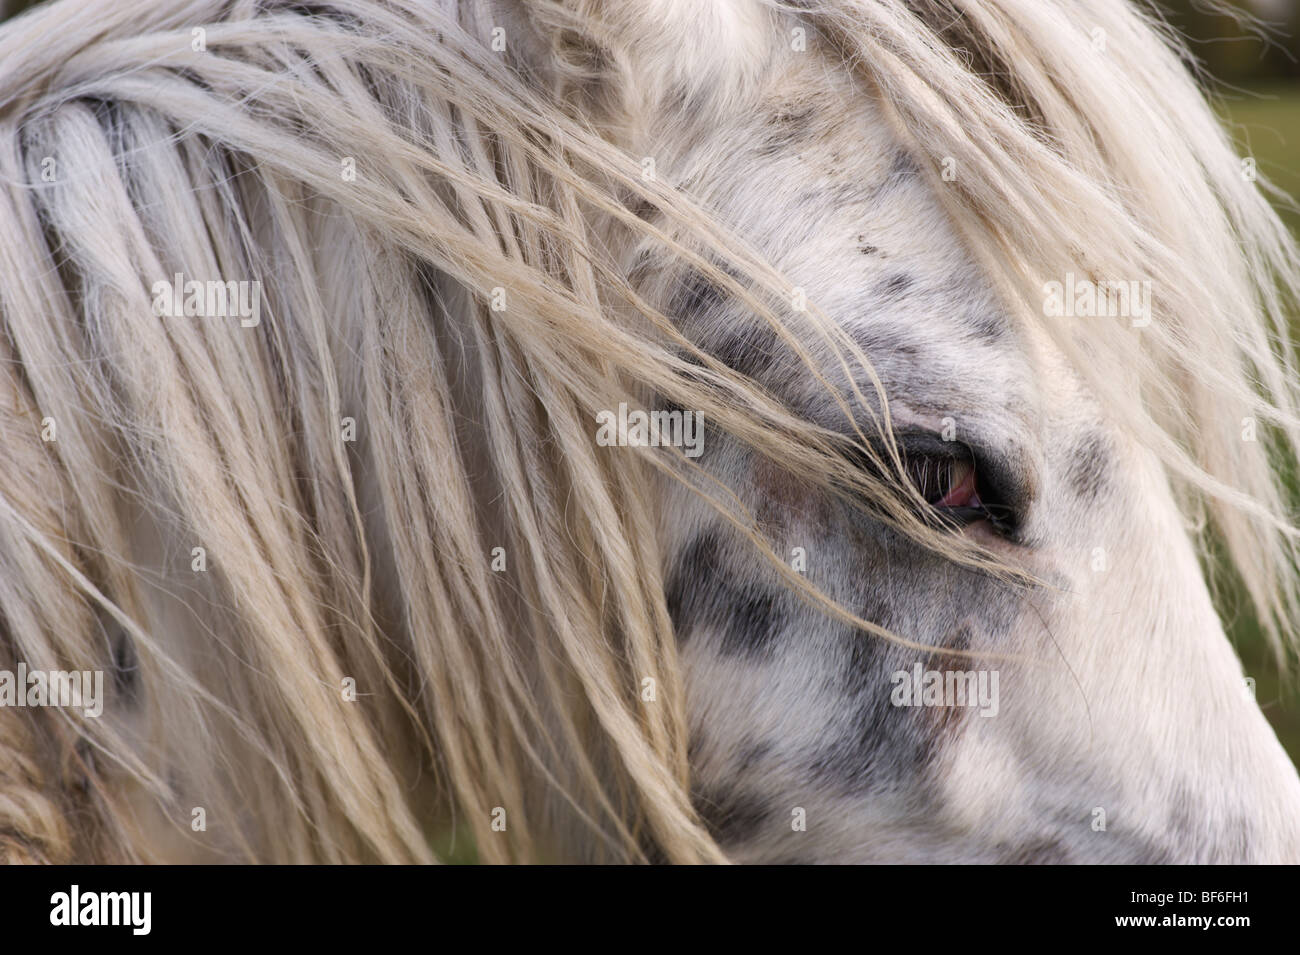 Ein Appaloosa Pferd sieht verdächtig an der Kamera Stockfoto